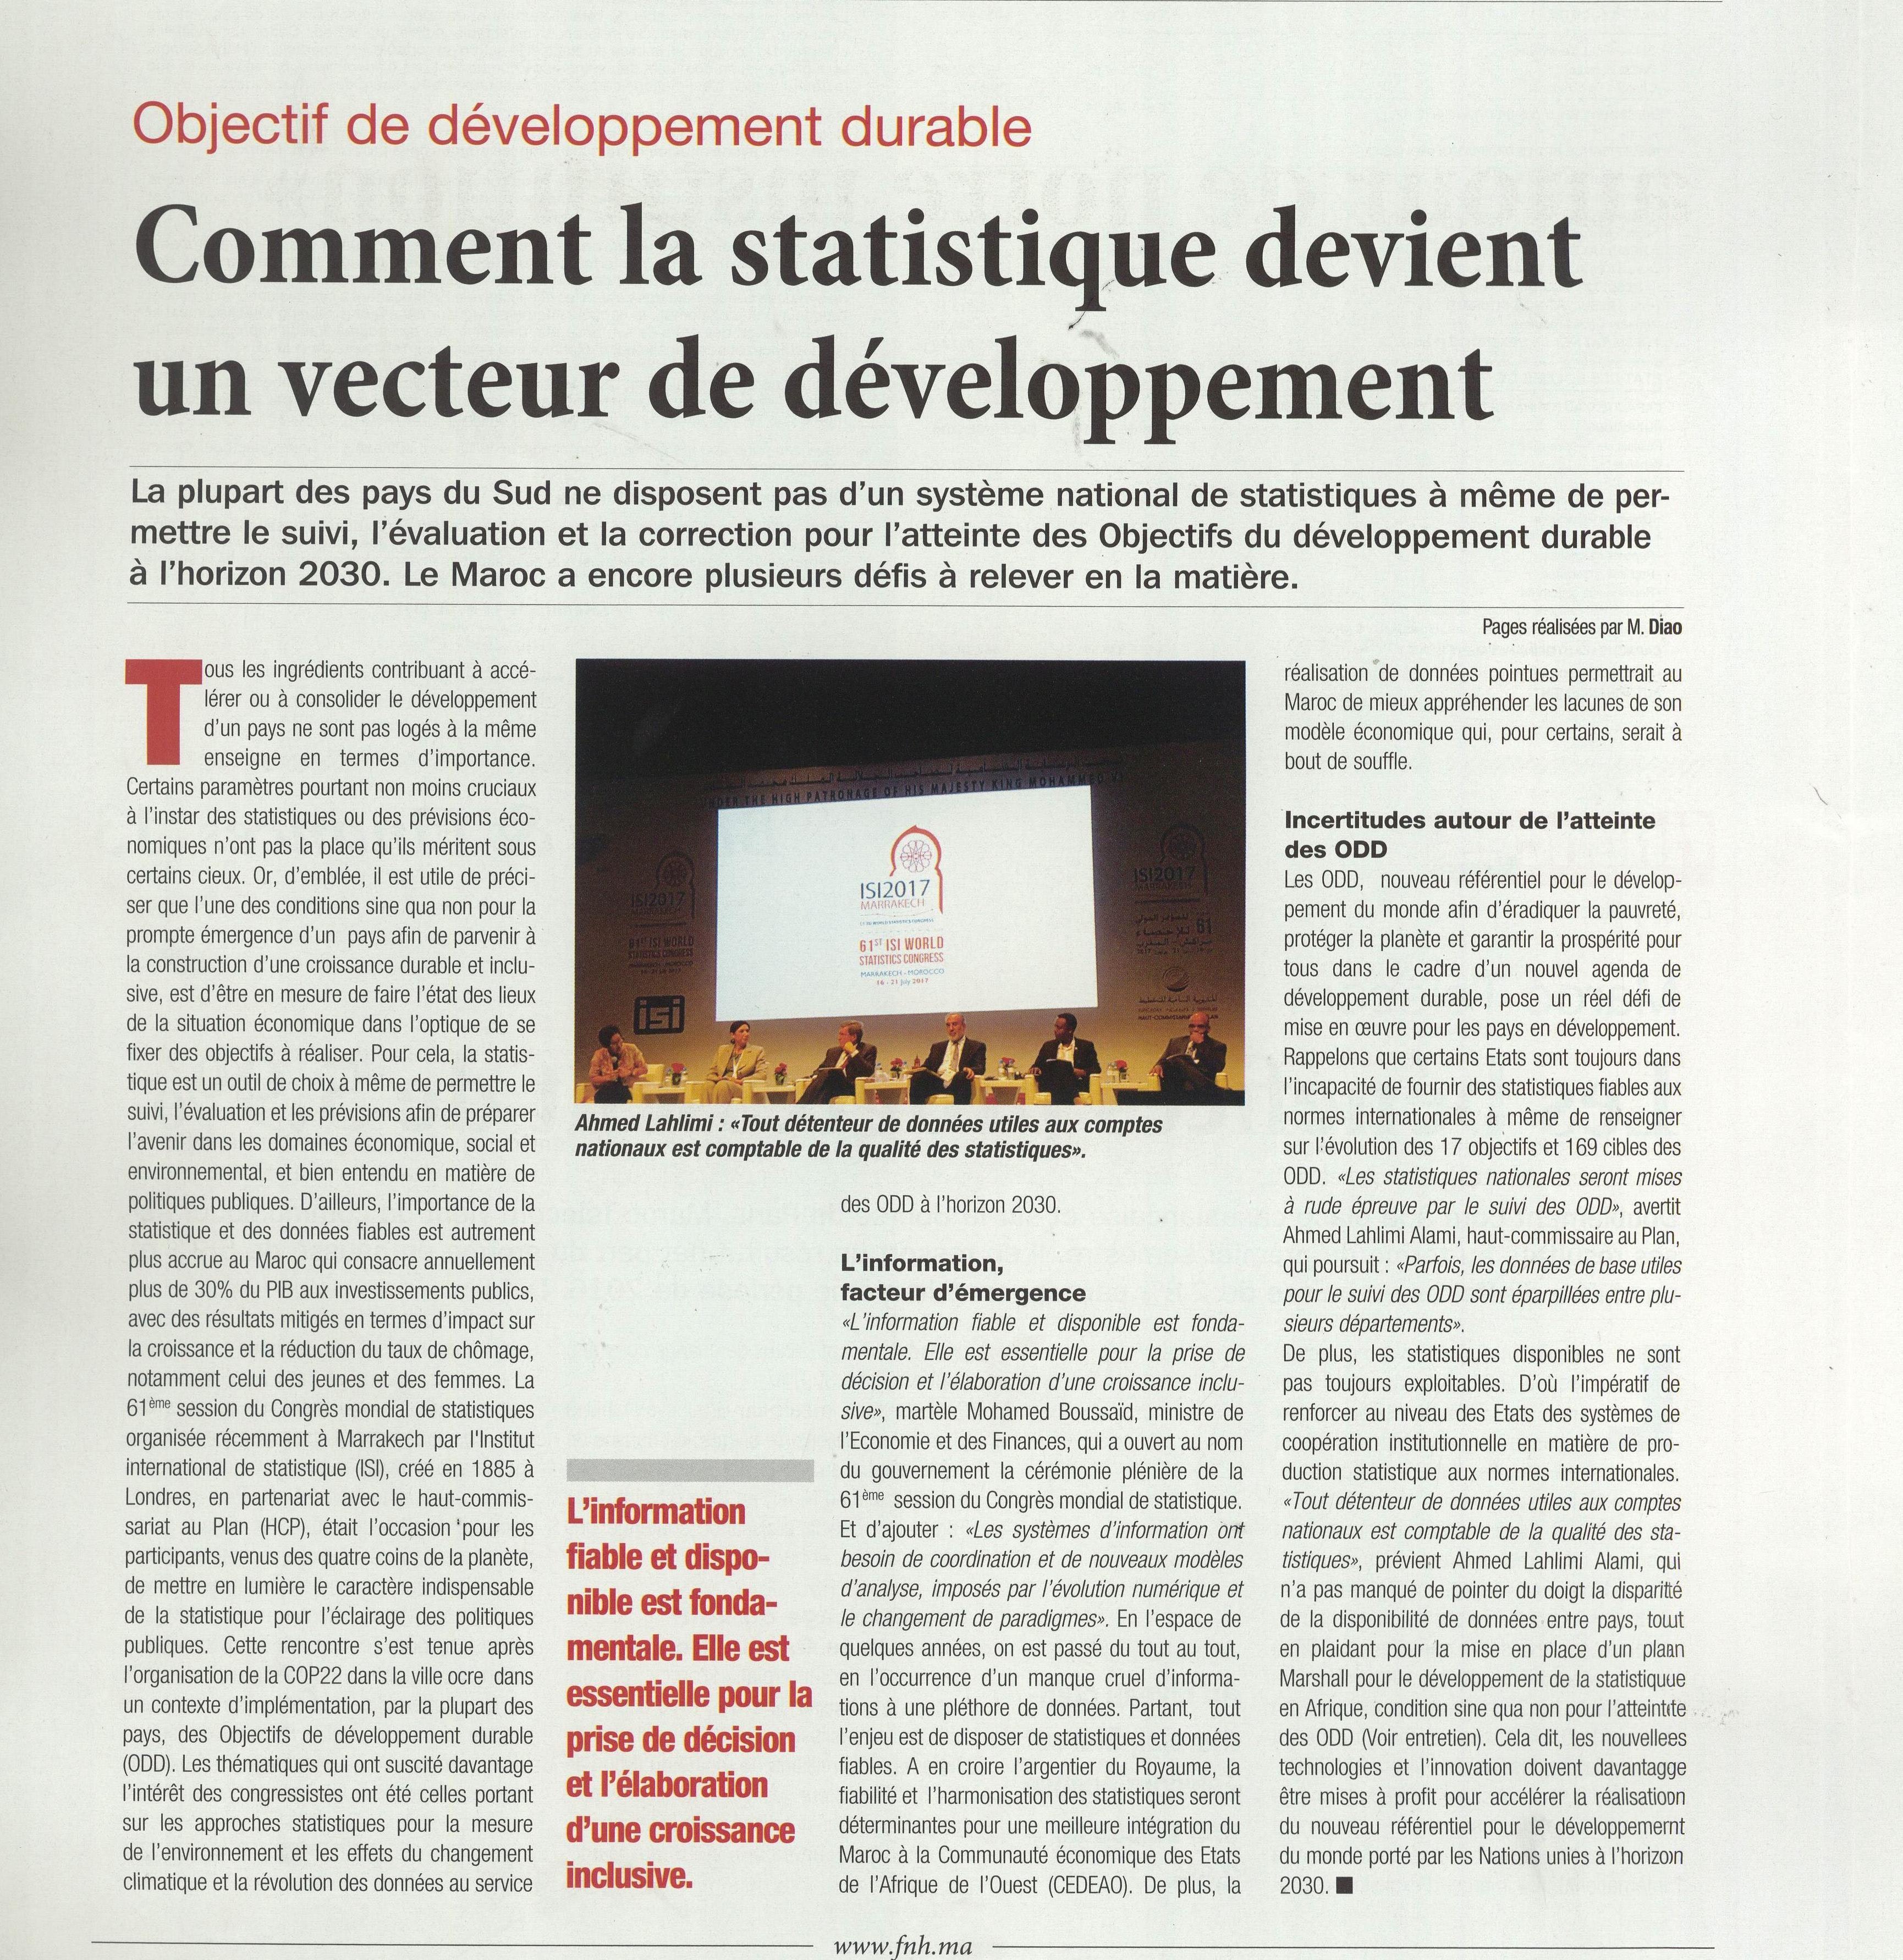 Objectif de développement durable: Comment la statistique devient un vecteur de développement